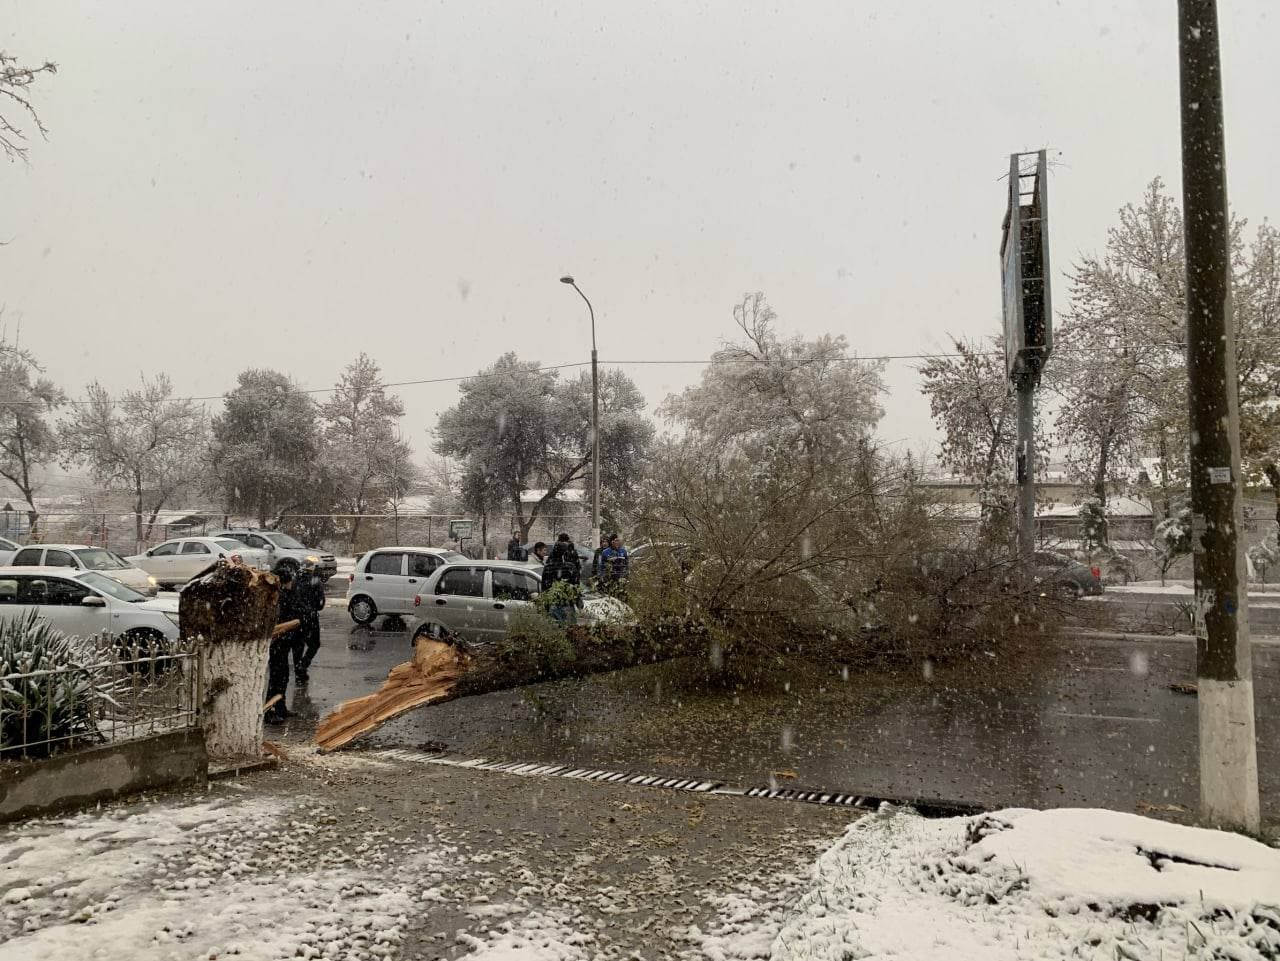 В Узбекистане из-за погодных изменений на автомобили массово падают деревья